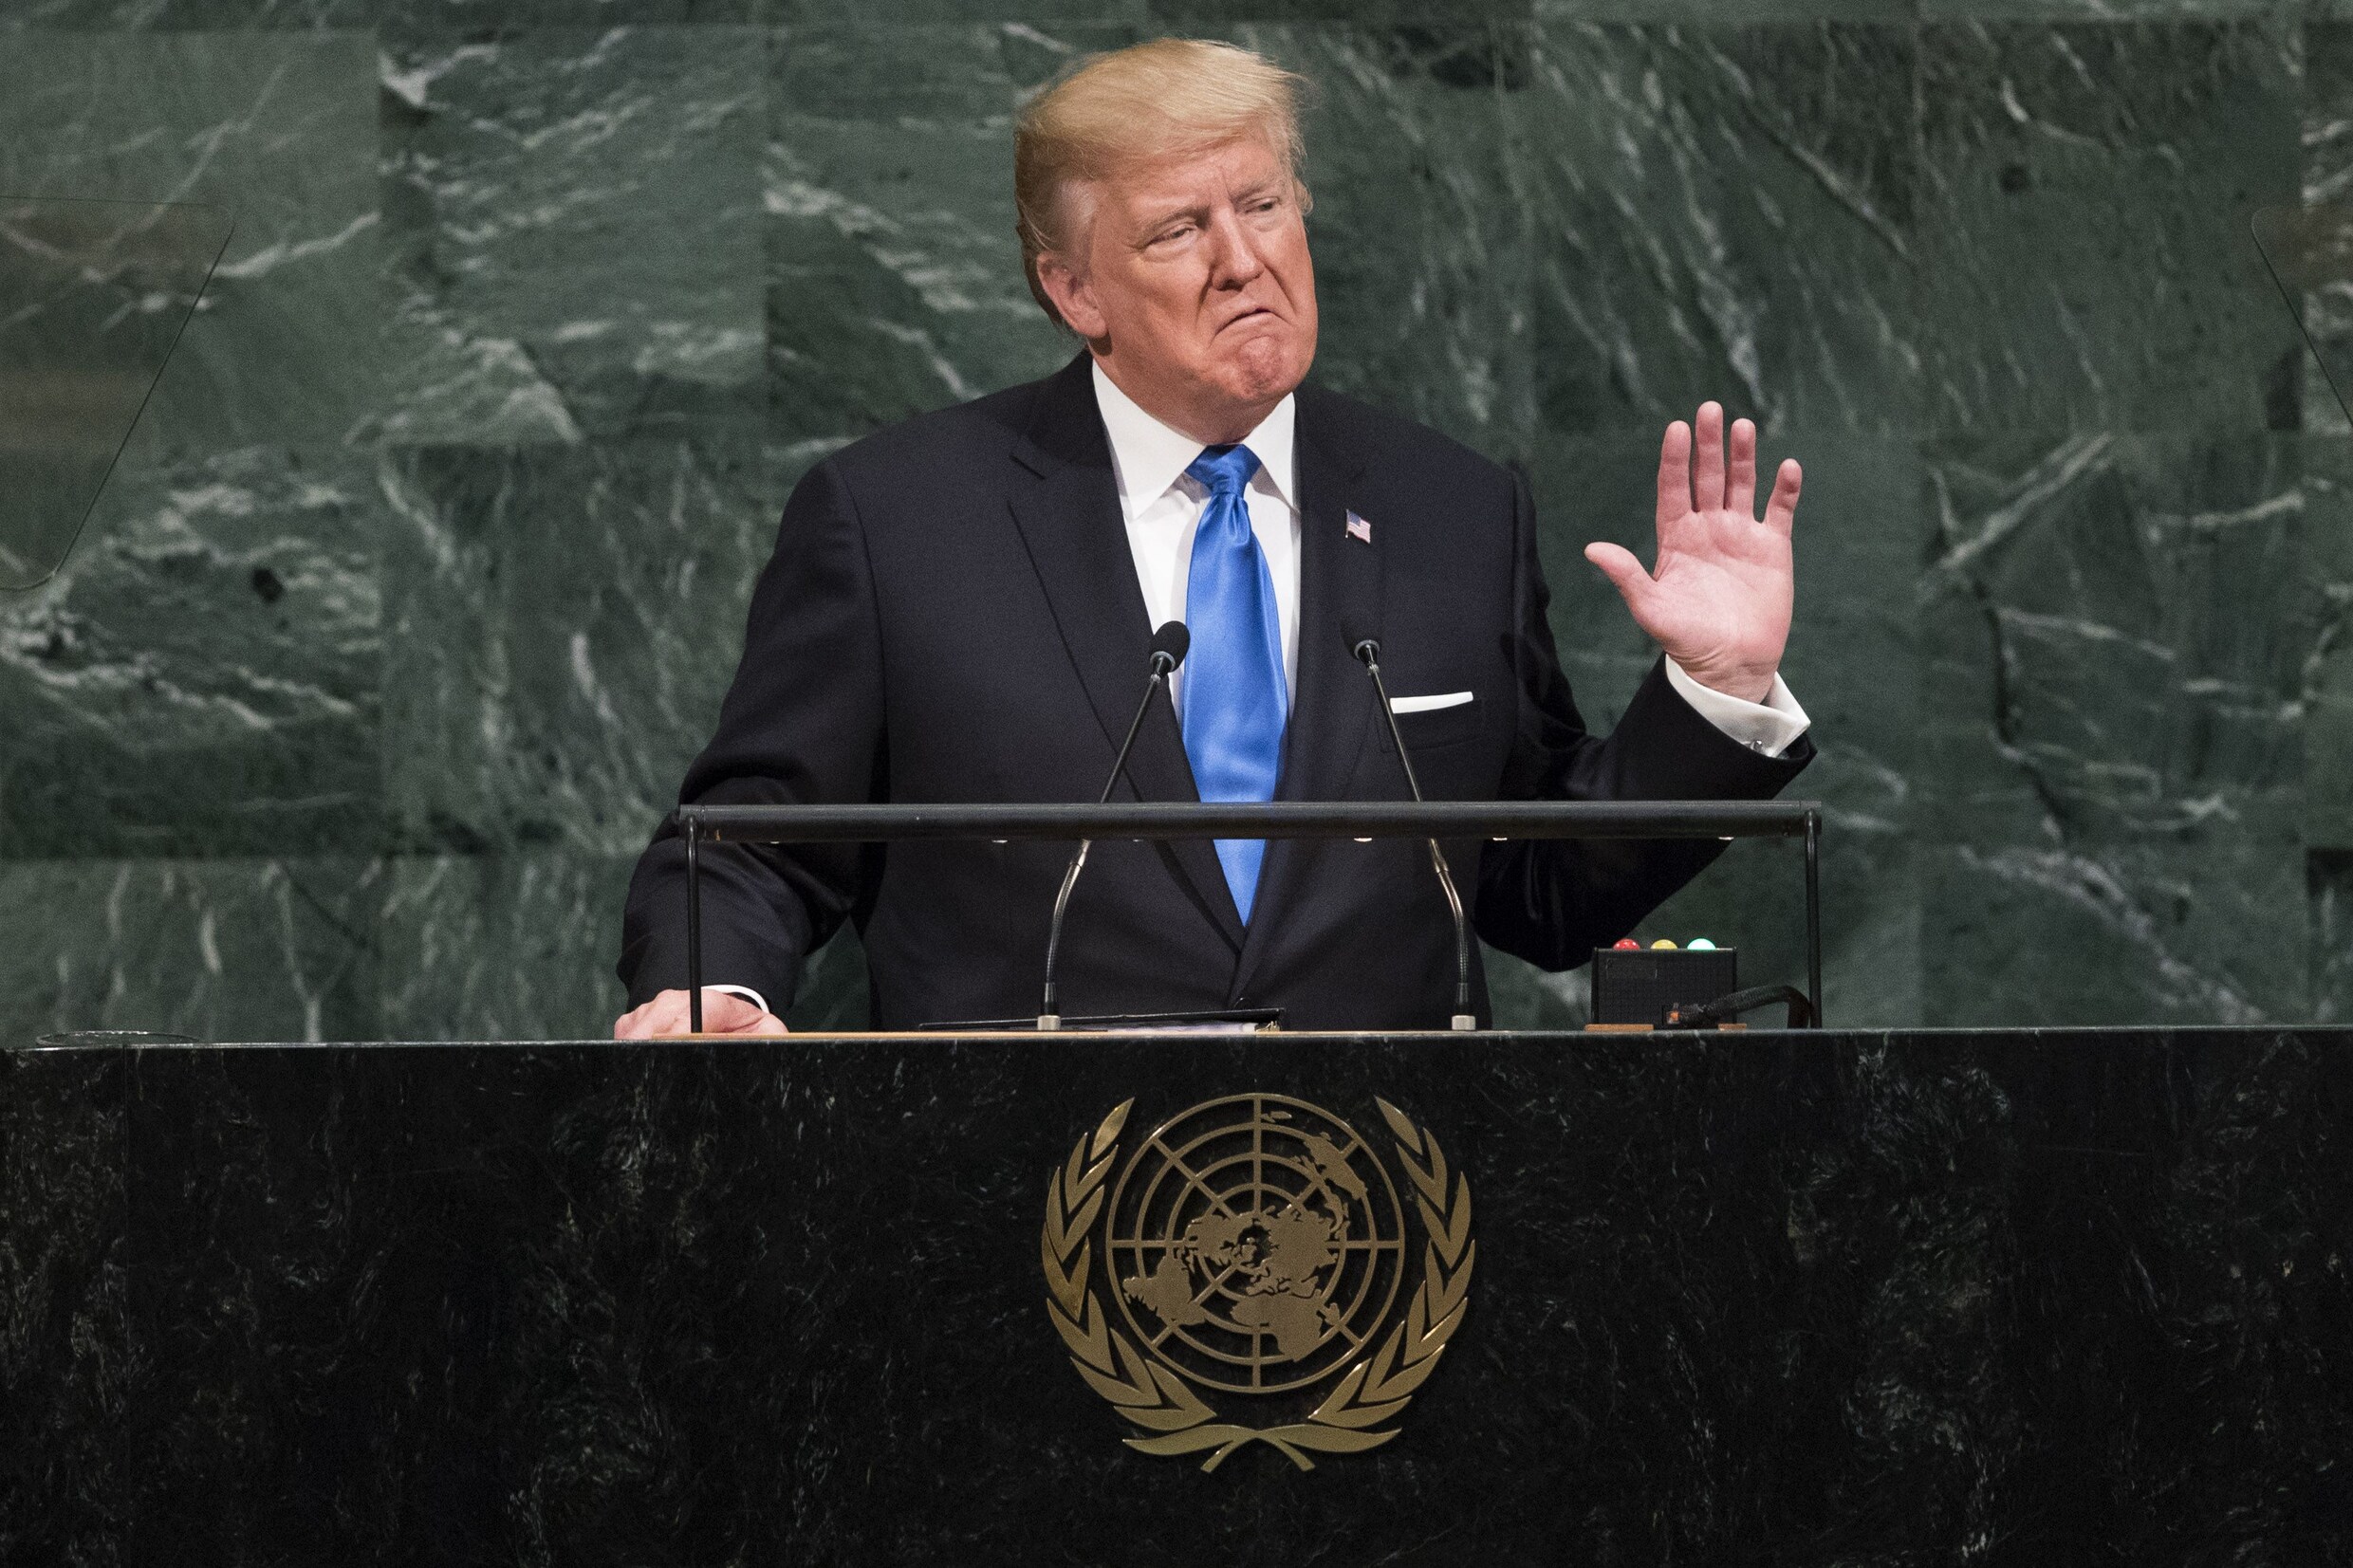 Trump dreigt in VN-toespraak om Noord-Korea "volledig te vernietigen"